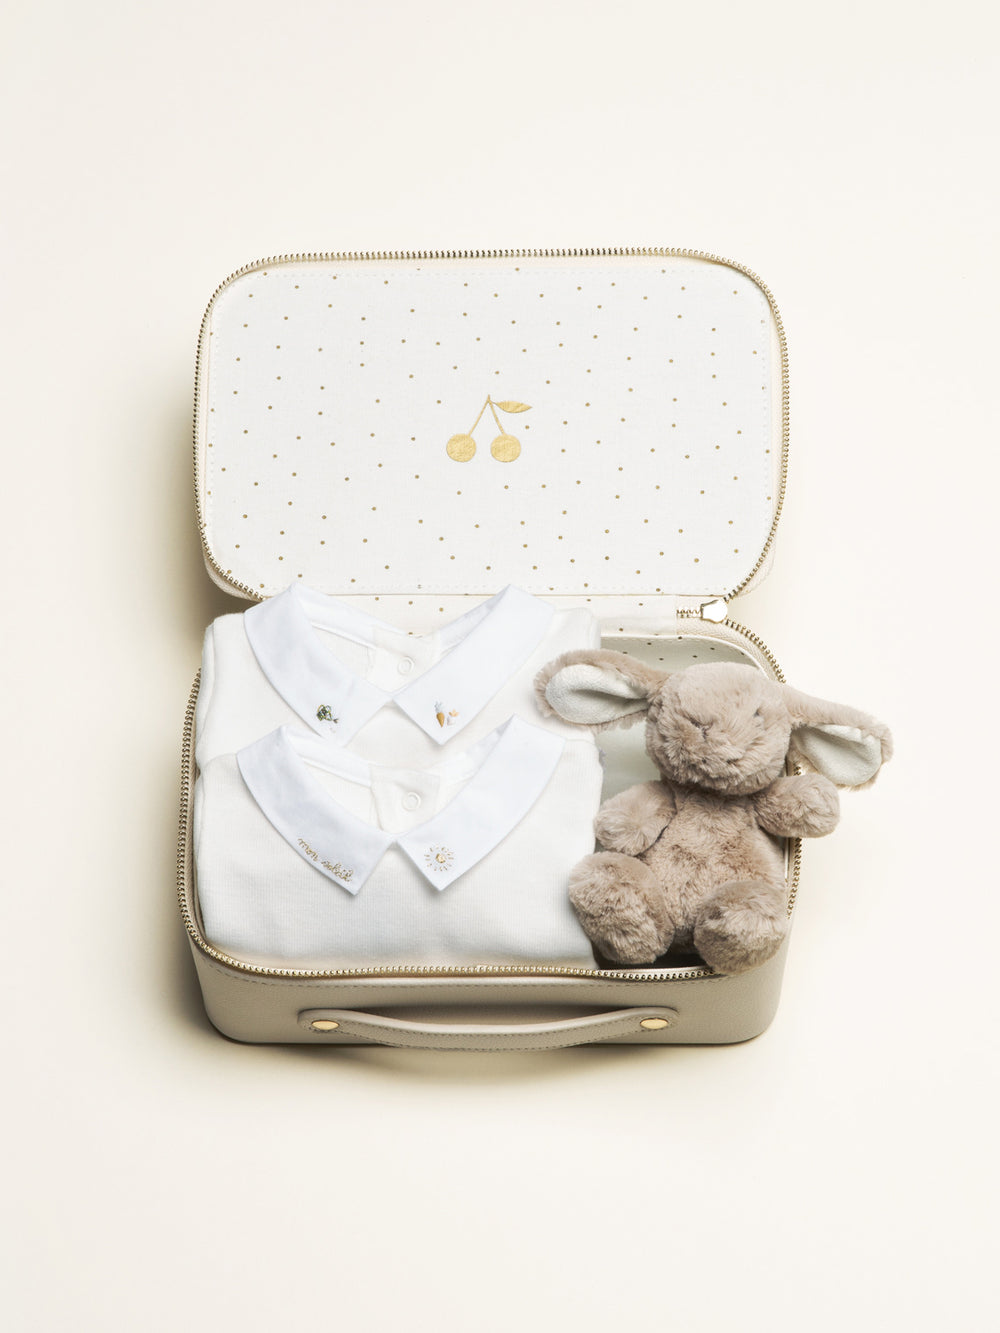 Petite valise naissance - Bodys et peluche lapin